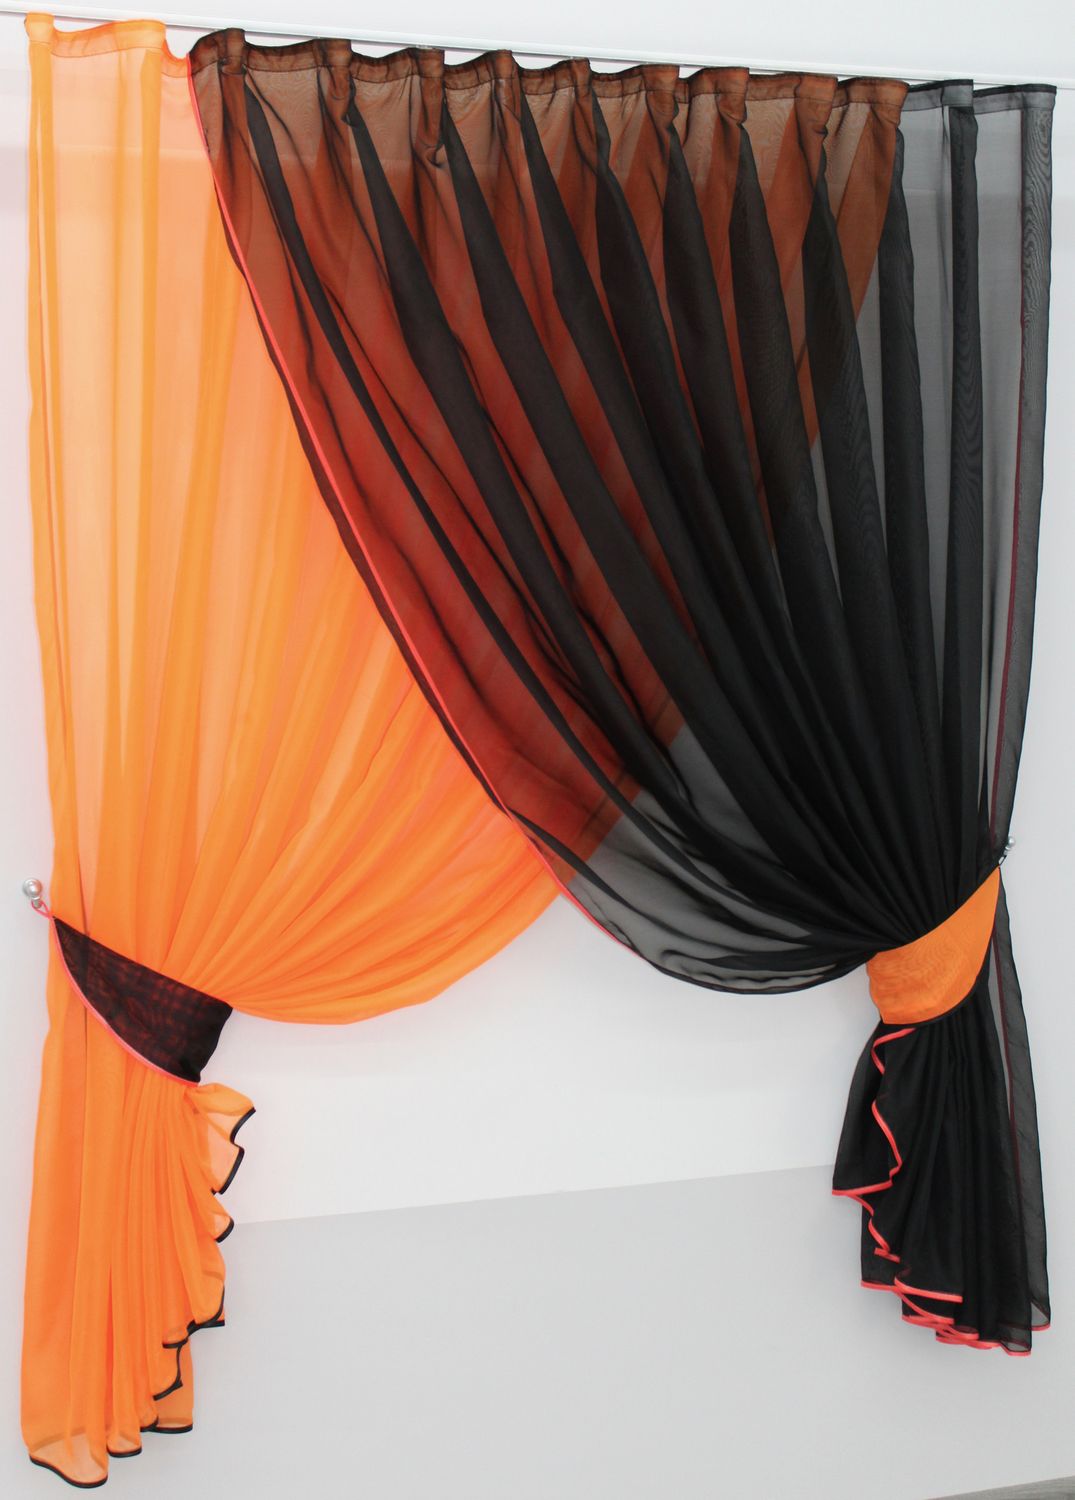 Кухонный комплект (330х170см) шторки с подвязками "Дуэт" цвет оранжевый с чёрным 060к 50-321